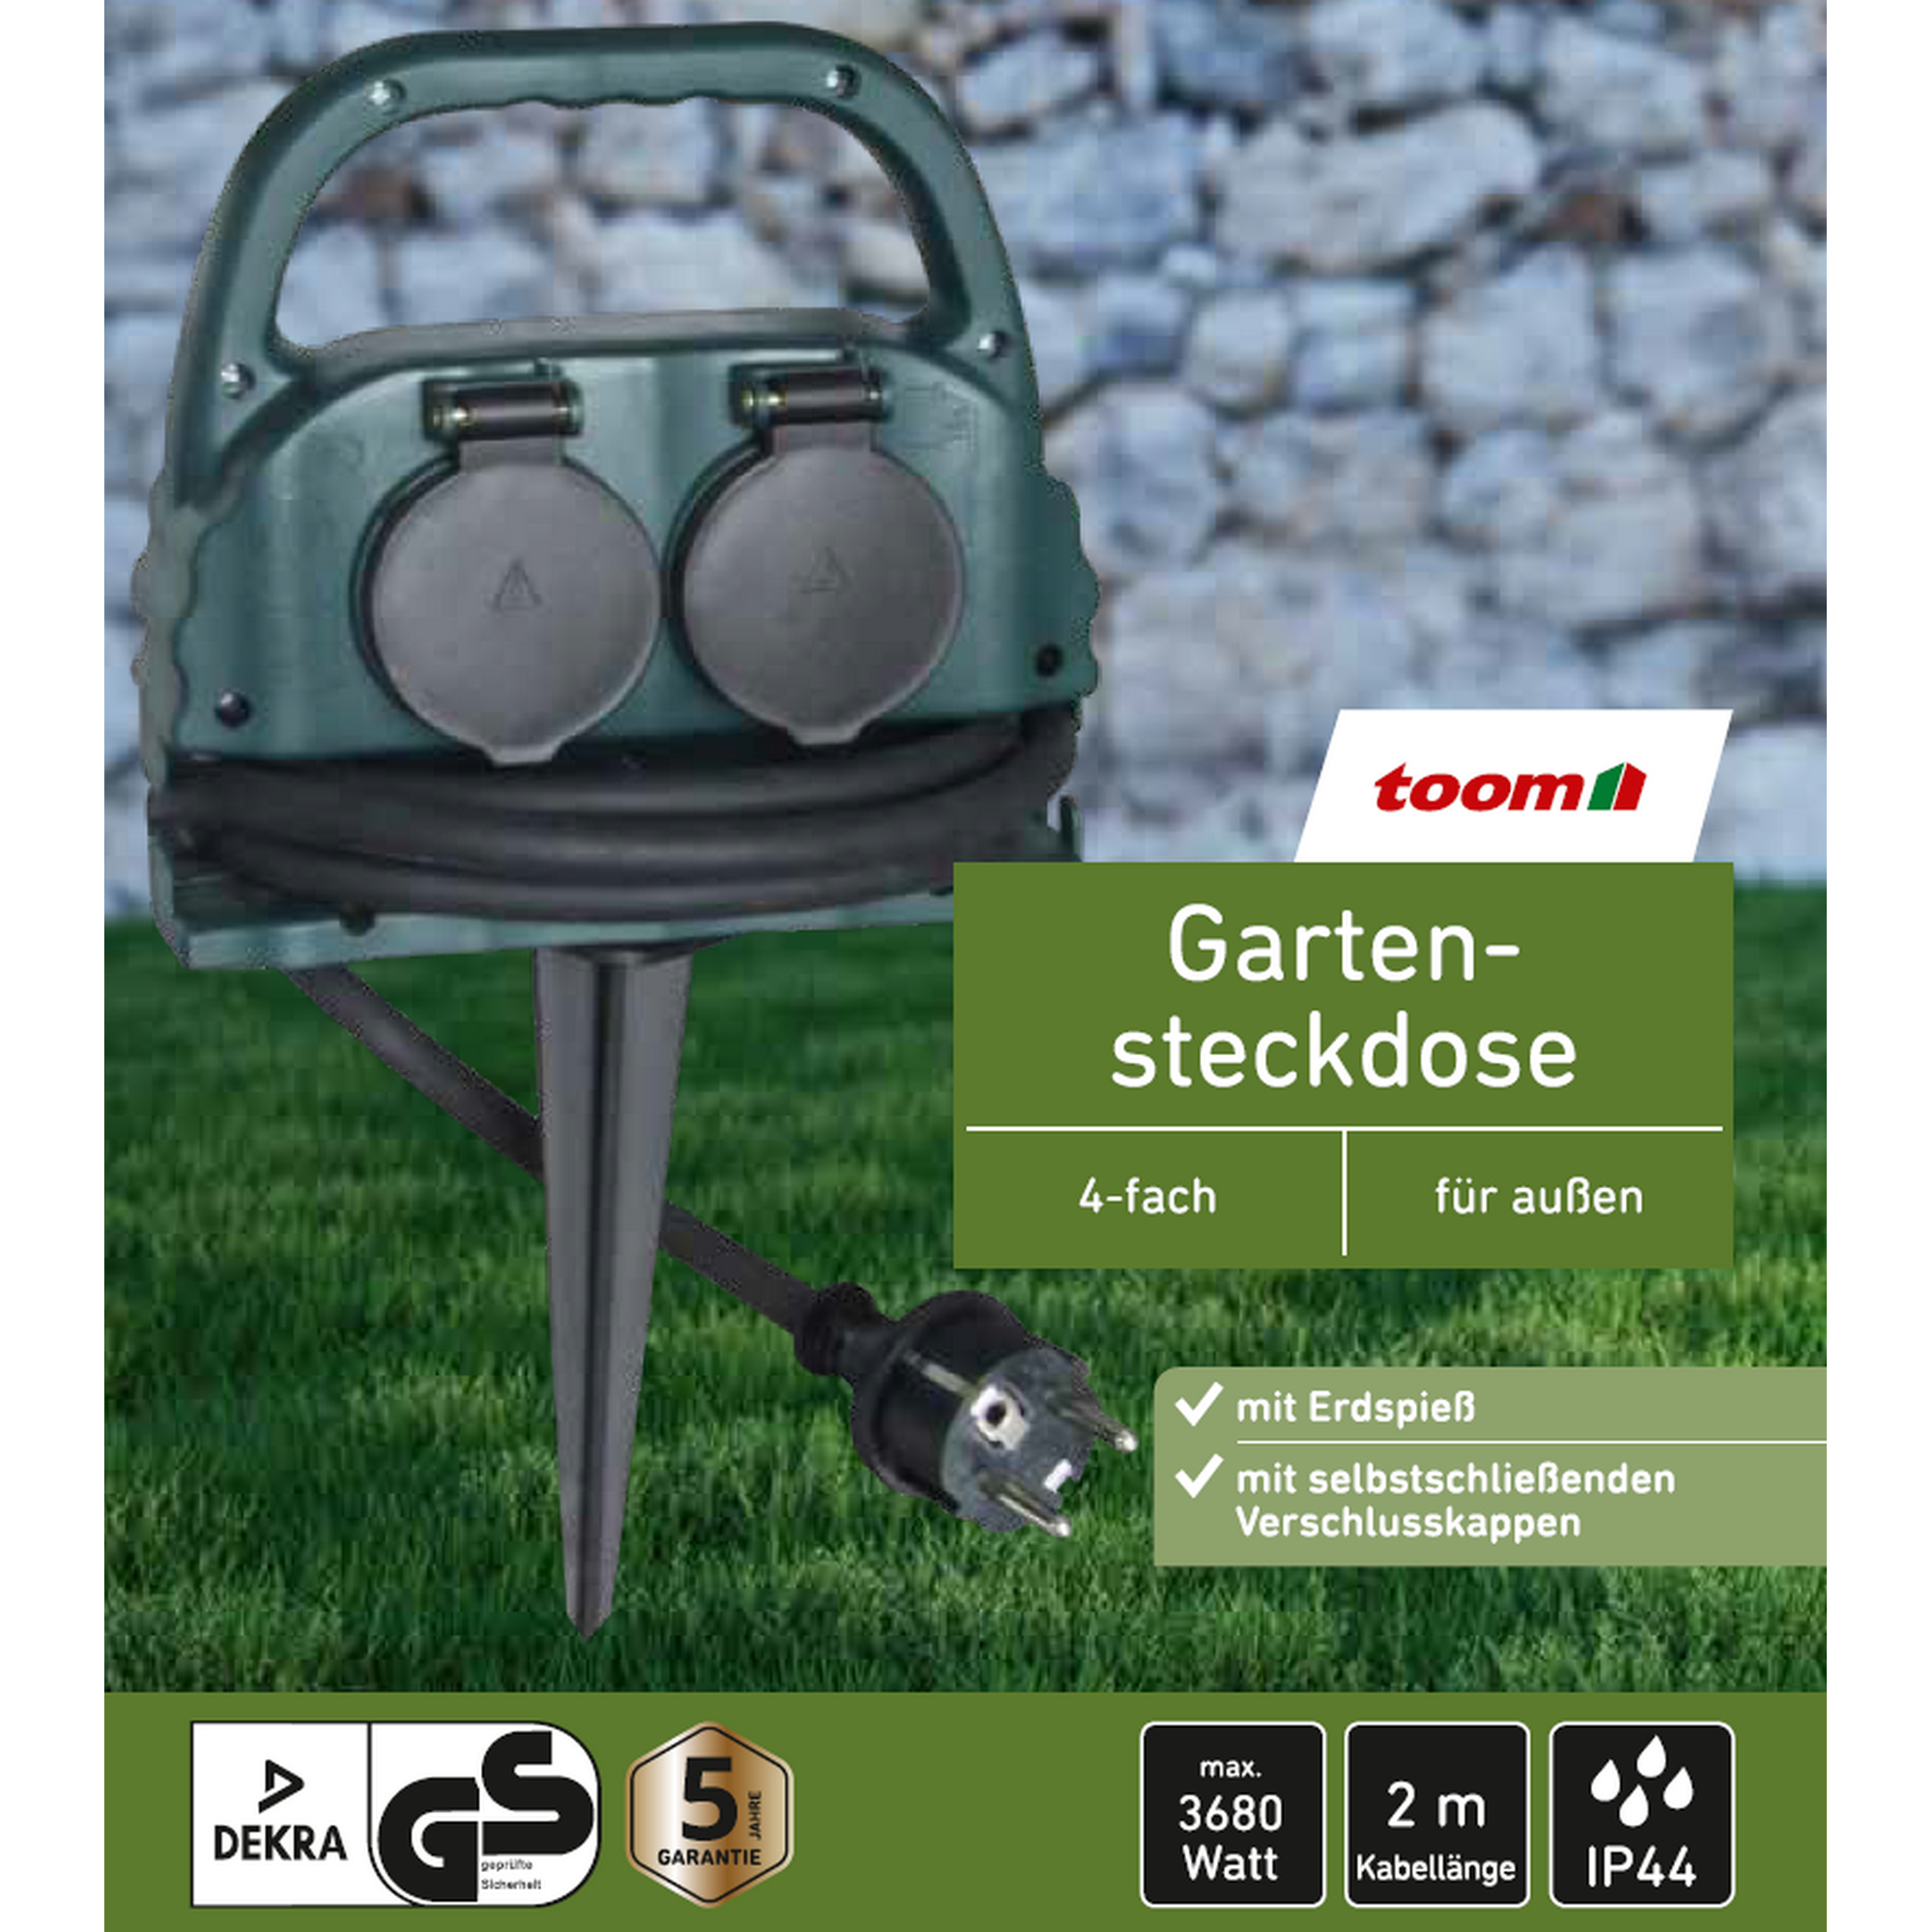 Gartensteckdose mit Erdspieß grün 4-fach + product picture